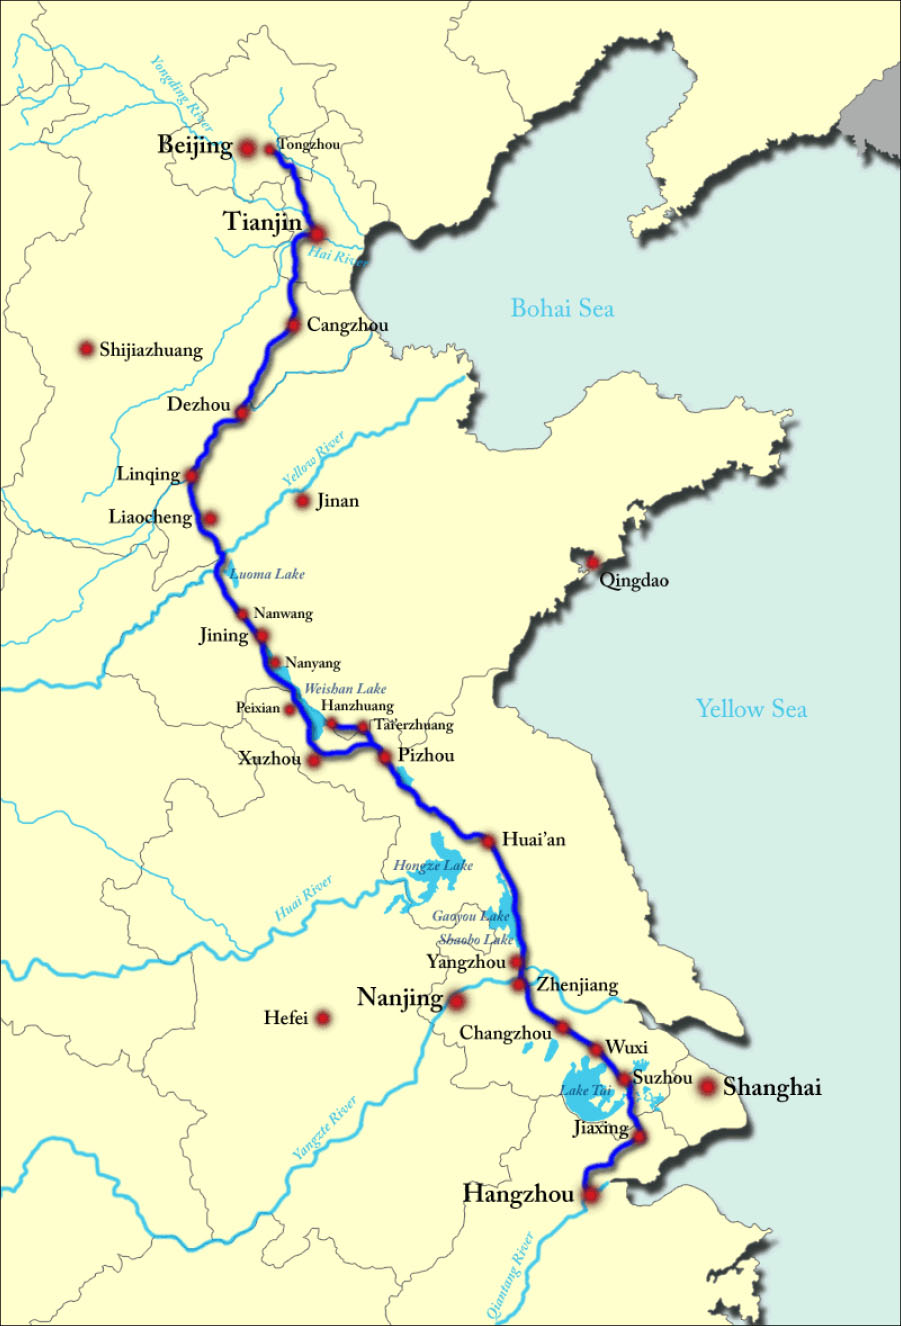 A map of an eastern portion of China is shown with the Bohai Sea and the Yellow Sea on the right. A blue line is shown starting from the north in Beijing and ending in the south at Hangzhou, passing through these cities along the way: Tongzhou, Tianjin, Changzhou, Dezhou, Linqing, Liaocheng, Nanwang, Jining, Nanyang, Peixian, Xuzhou, Pizhou, Huai’an, Yangzhou, Zhenjiang, Changzhou, Wuxi, Suzhou, and Jiaxing. At Pizhou the blue line heads north through Tai’erzhnang and ends at Hanzhuang. Other cities that are labeled from north to south are: Shijiazhuang, Jinan, Qingdao, Nanjing, Hefei, and Shanghai.